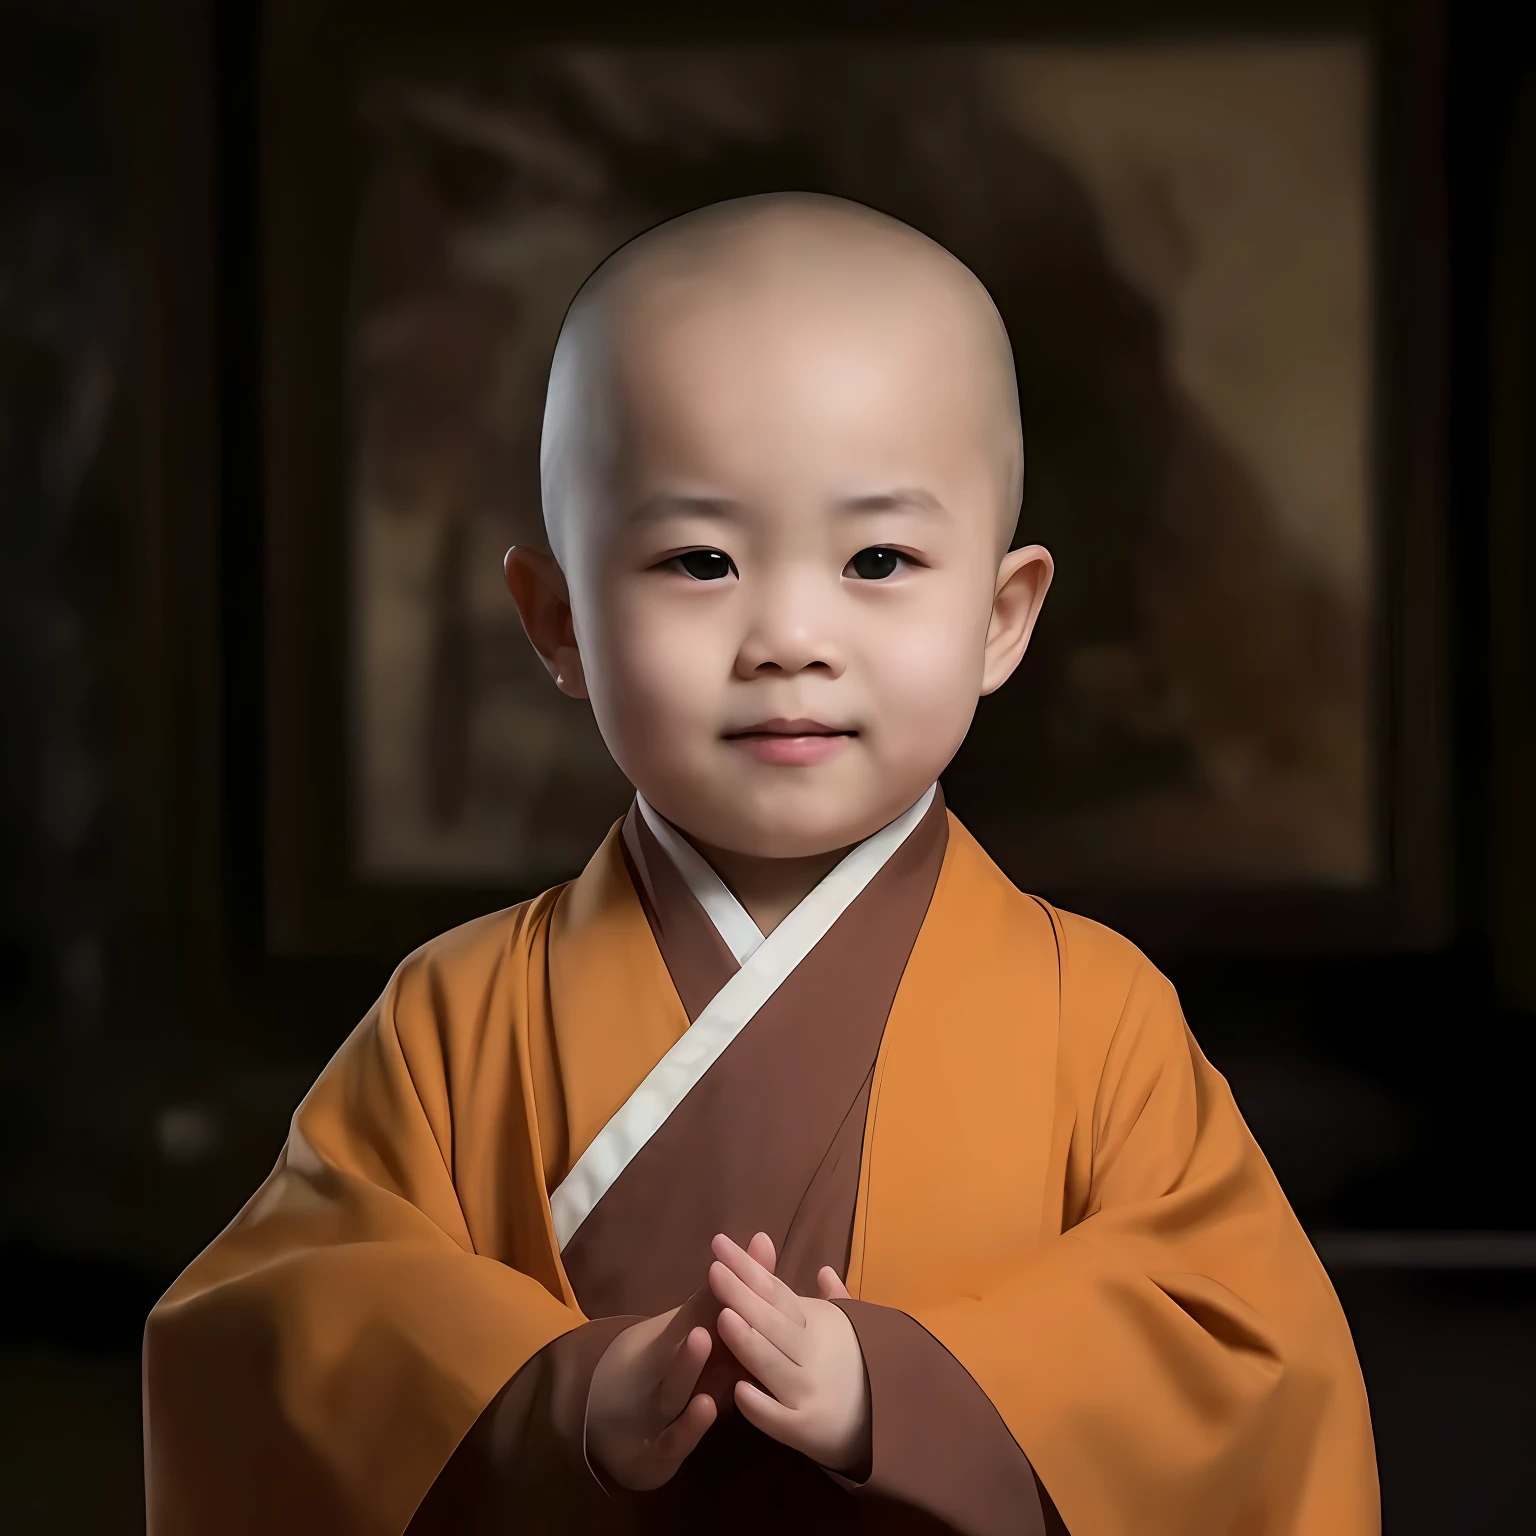 arafed  in a монах robe standing in front of a painting, portrait of монах, буддист монах, монах clothes, монах, в коричневых одеждах, спокойное выражение лица, С улыбкой，буддист, монах, мирное выражение, носить простые одежды, монах meditate,1.8